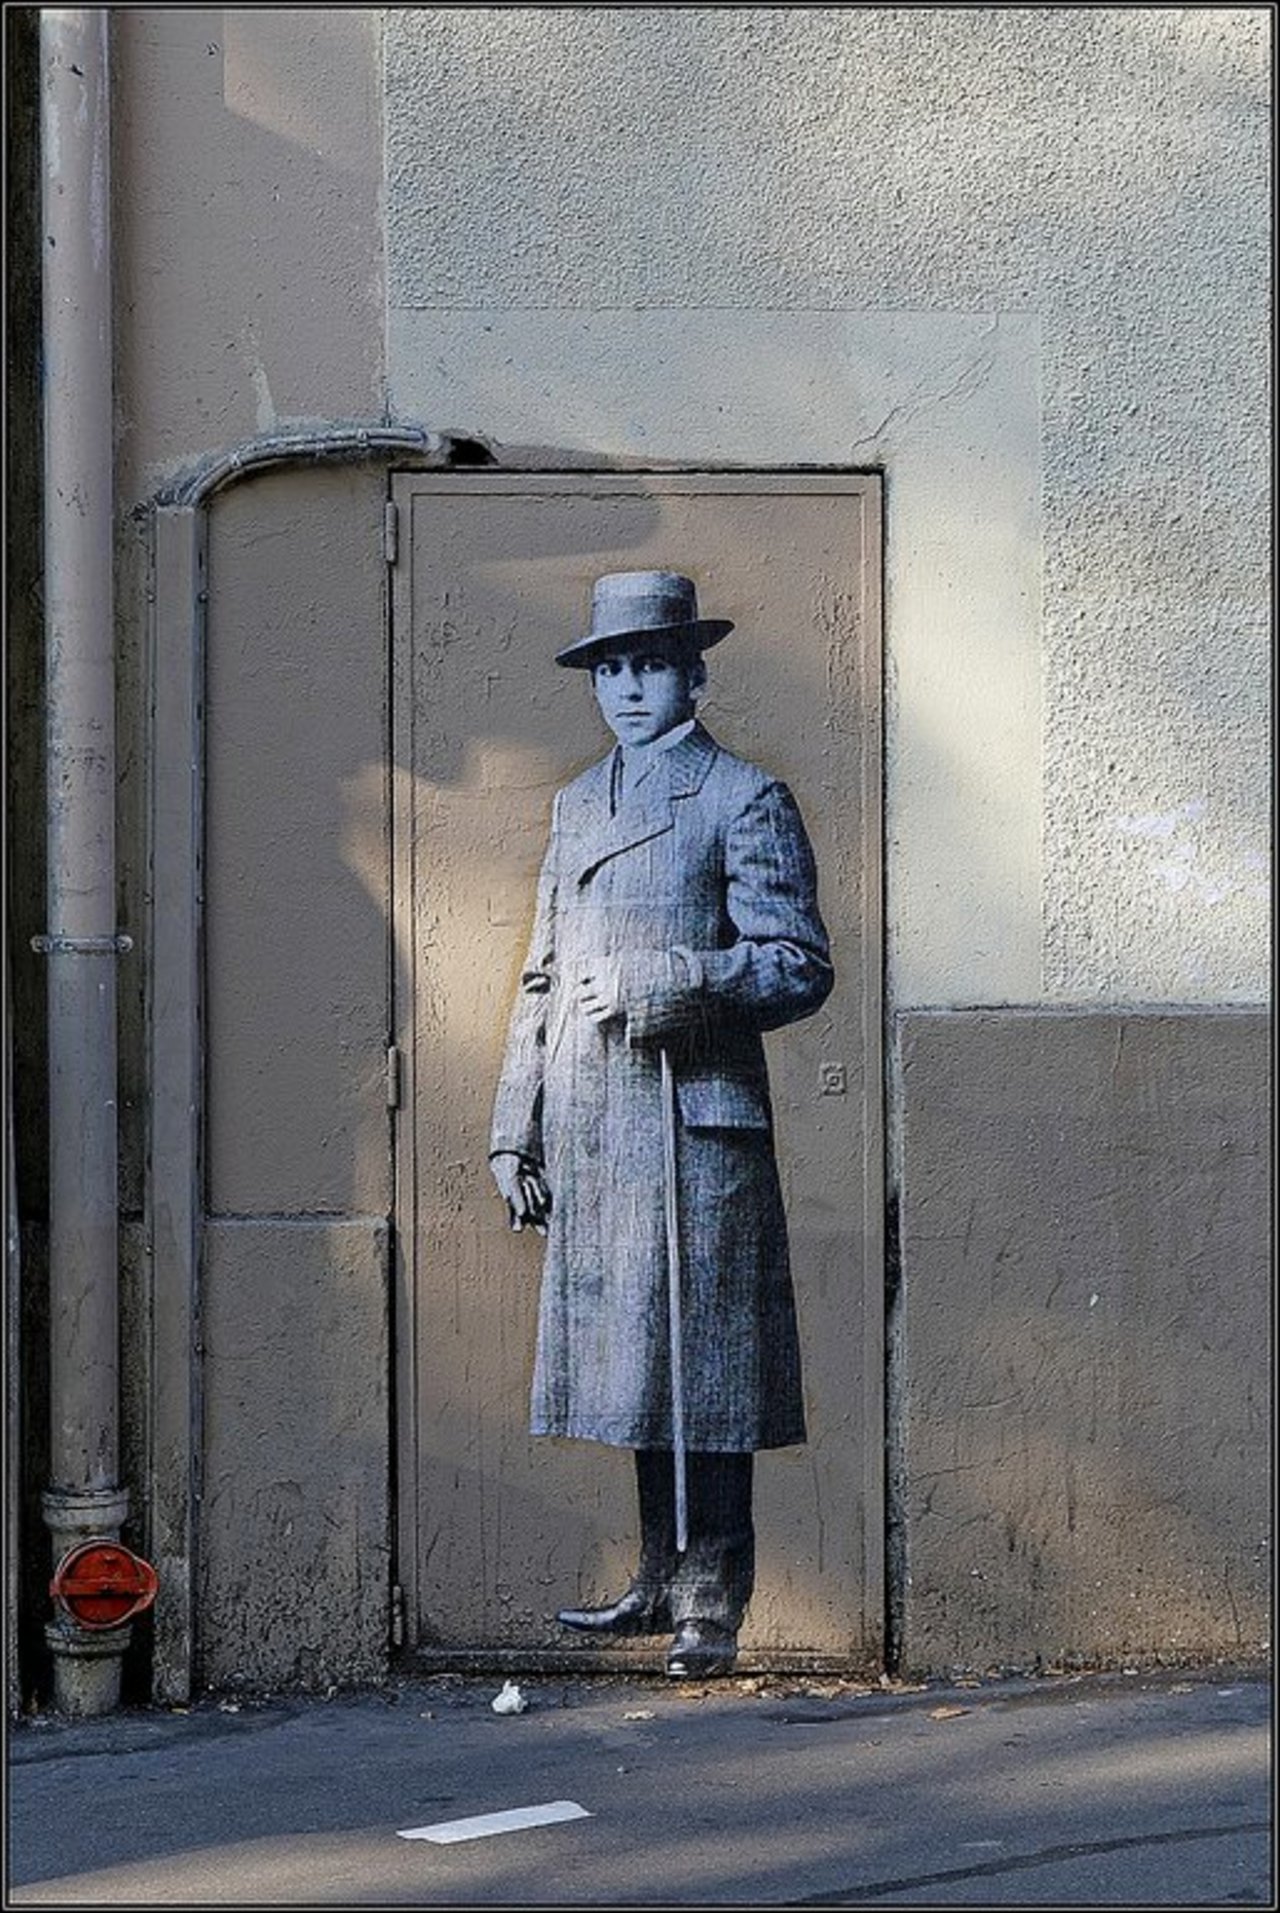 Street Art by anonymous in #Paris http://www.urbacolors.com #art #mural #graffiti #streetart https://t.co/IfEMYrjFeO